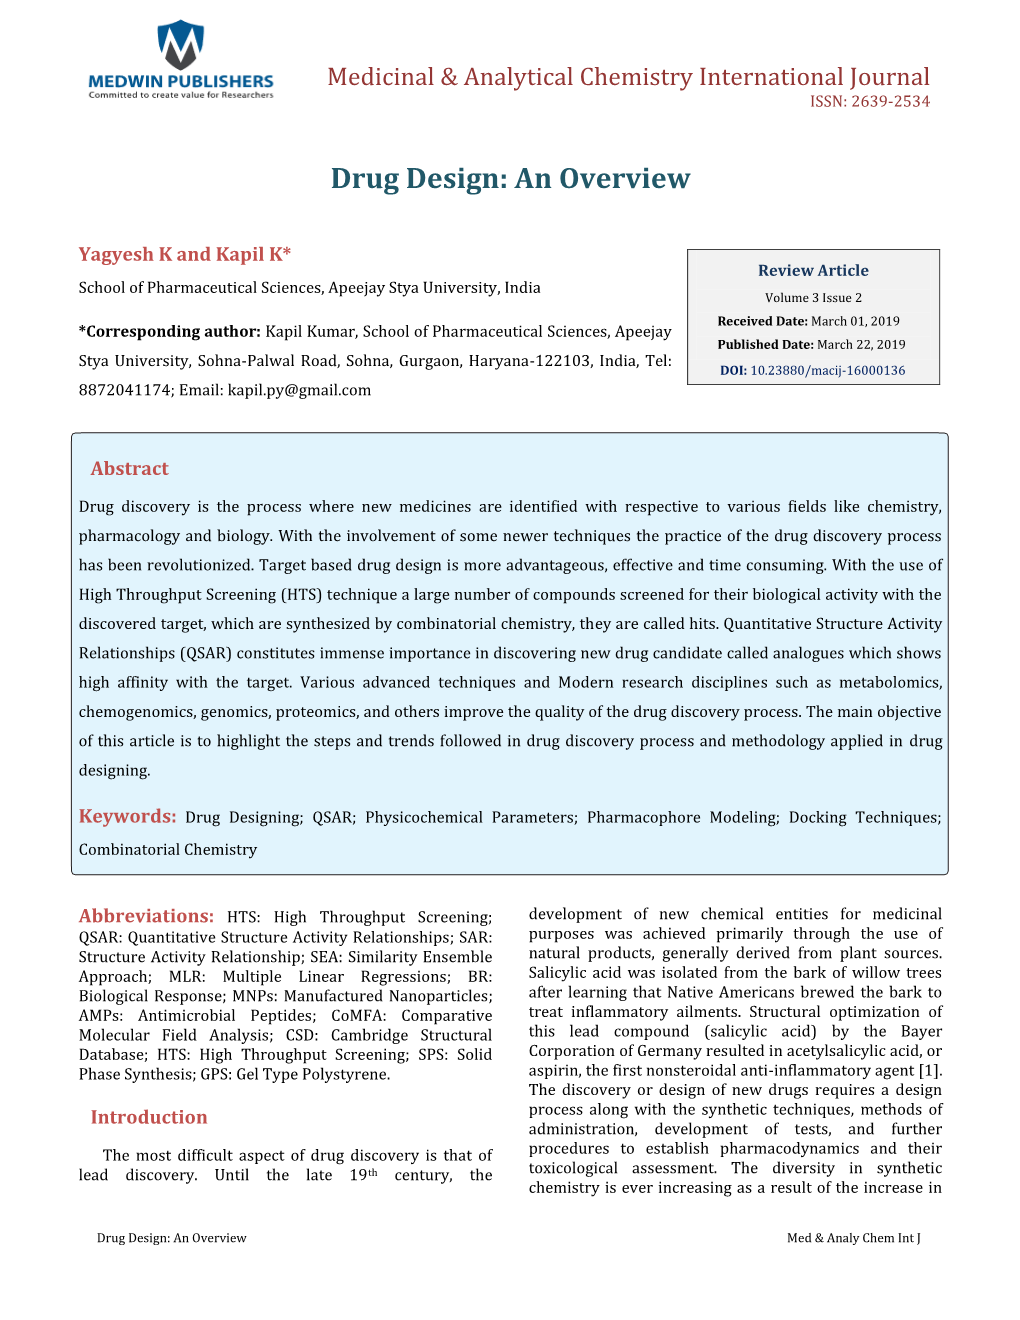 Drug Design: an Overview